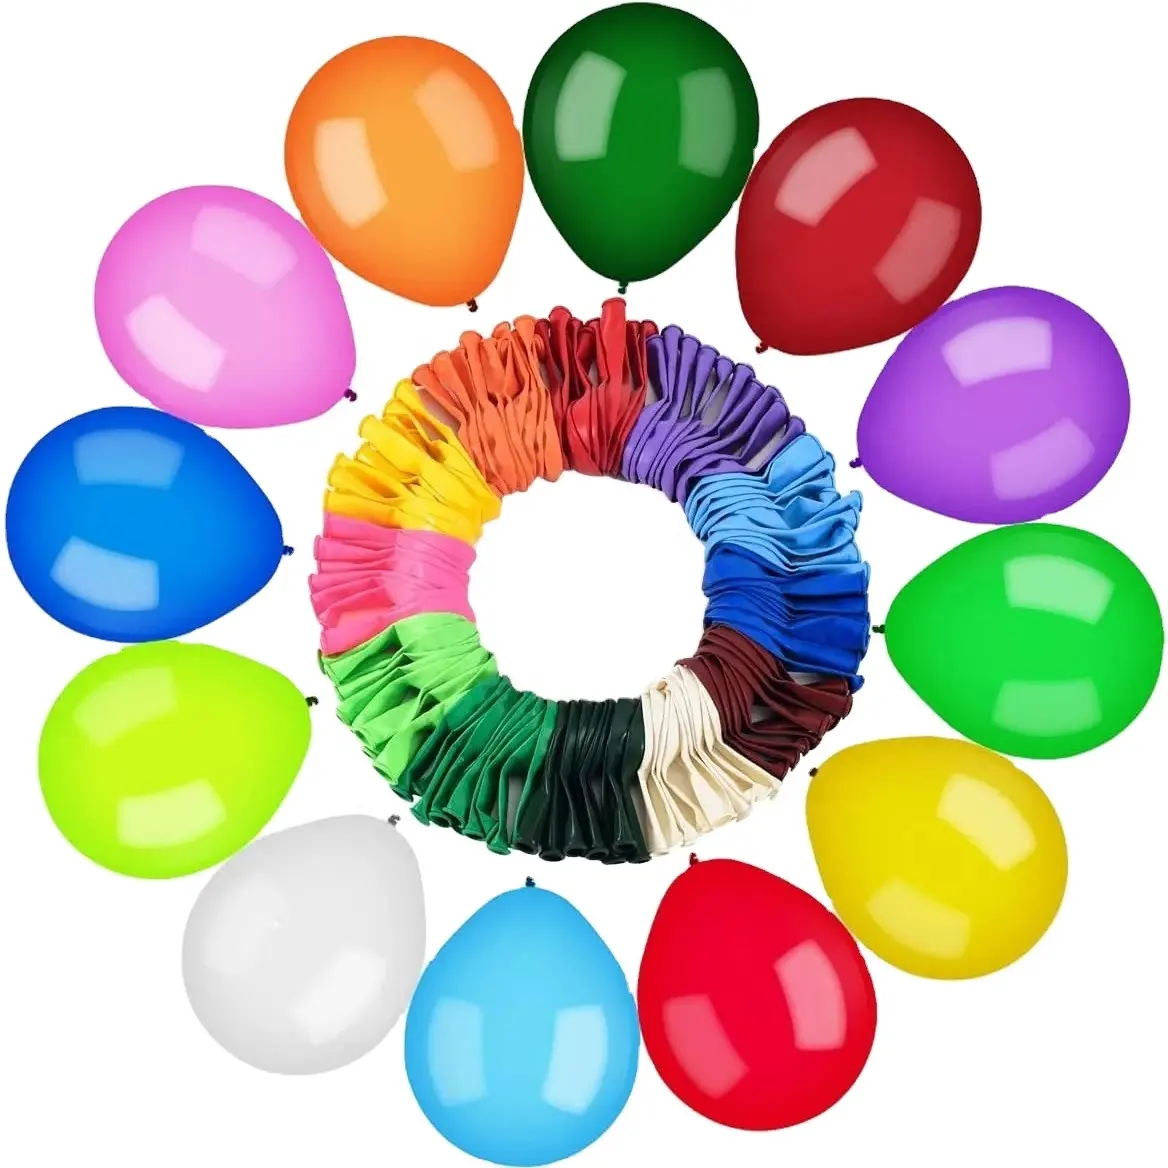 Laag Geprijsde Directe Verkoop Explosieveilige Latex Matte Ballon Voor Feestdecoraties